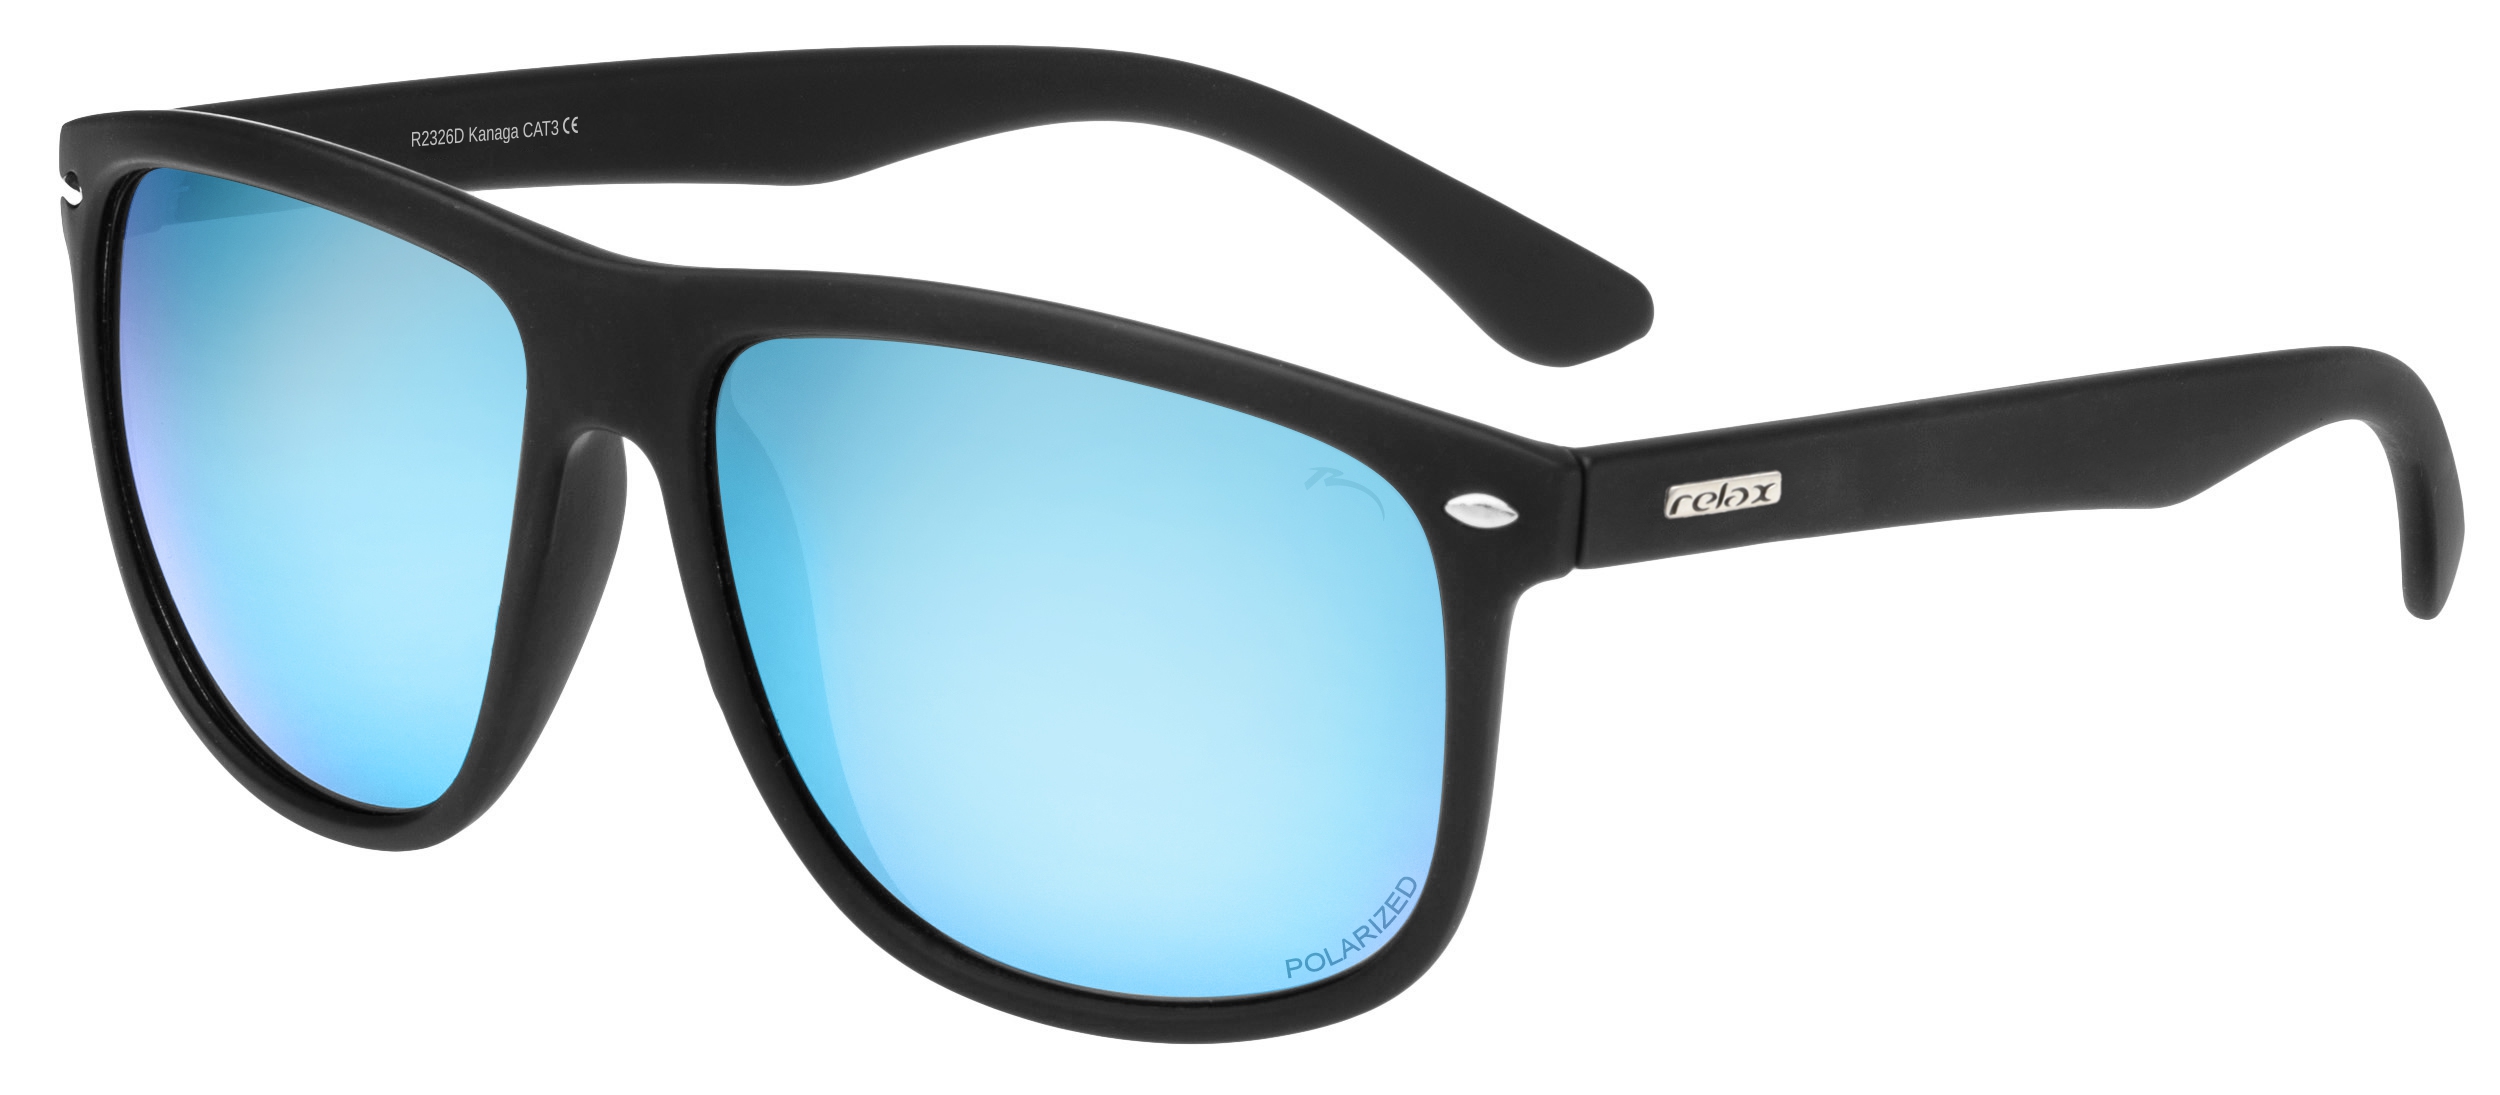 Polarizační sluneční brýle Relax Kanaga R2326D - standard